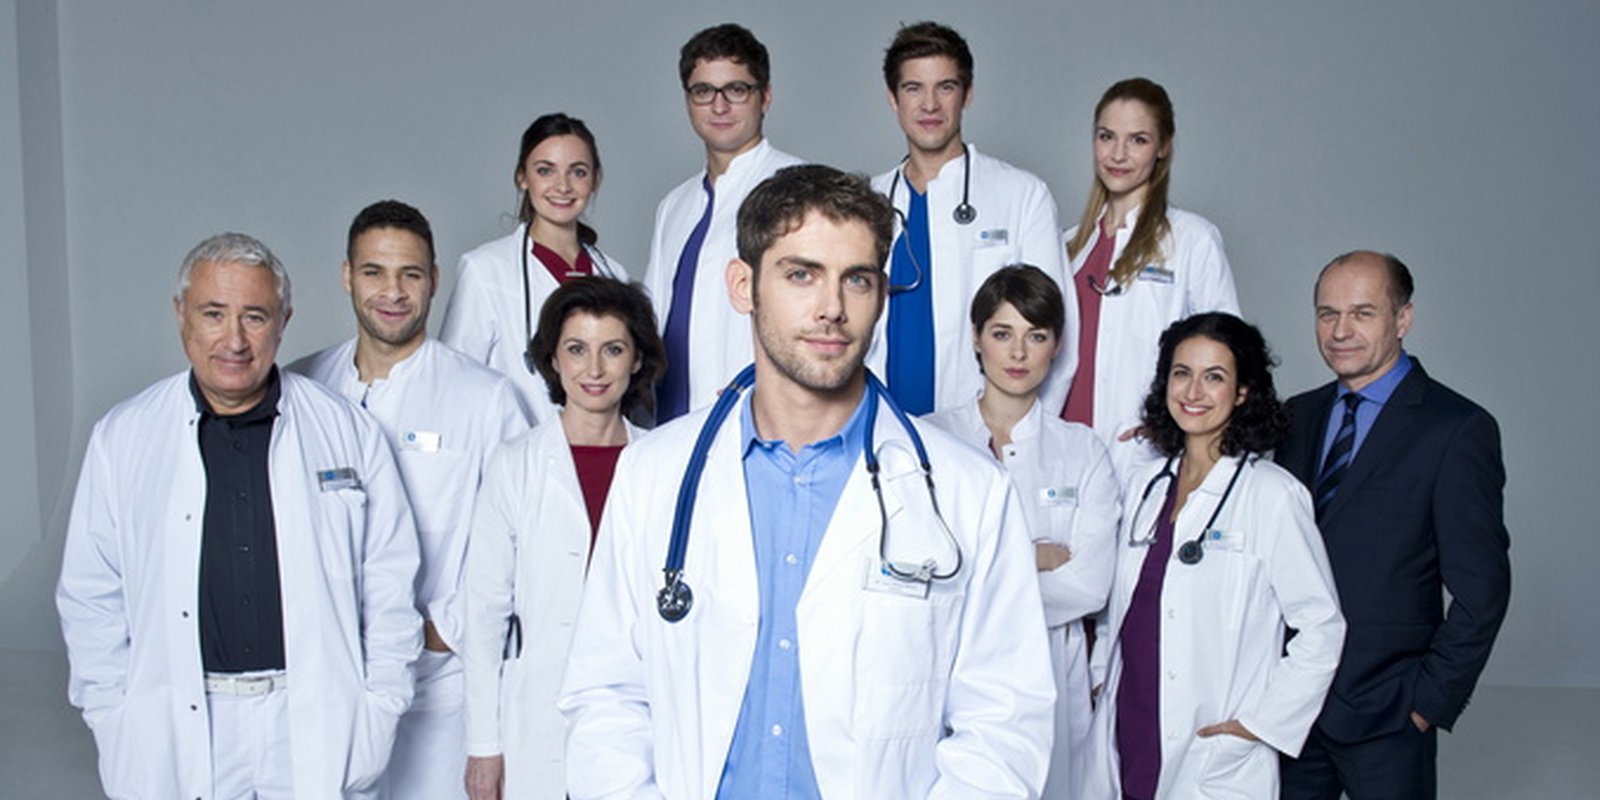 In aller Freundschaft - Die jungen Ärzte - Staffel 1